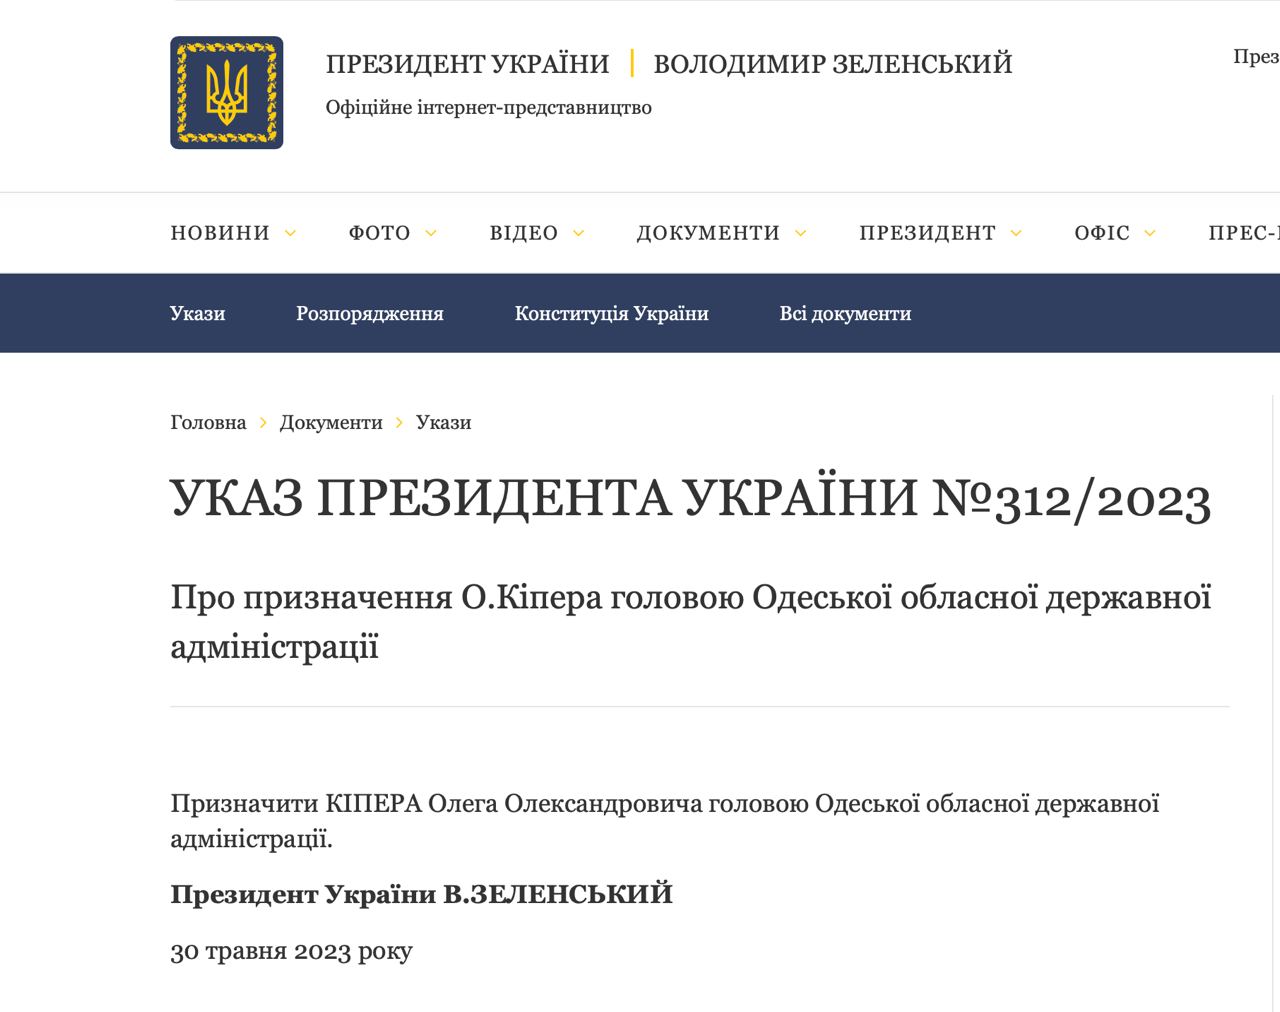 Зеленский назначил новым главой Одесской